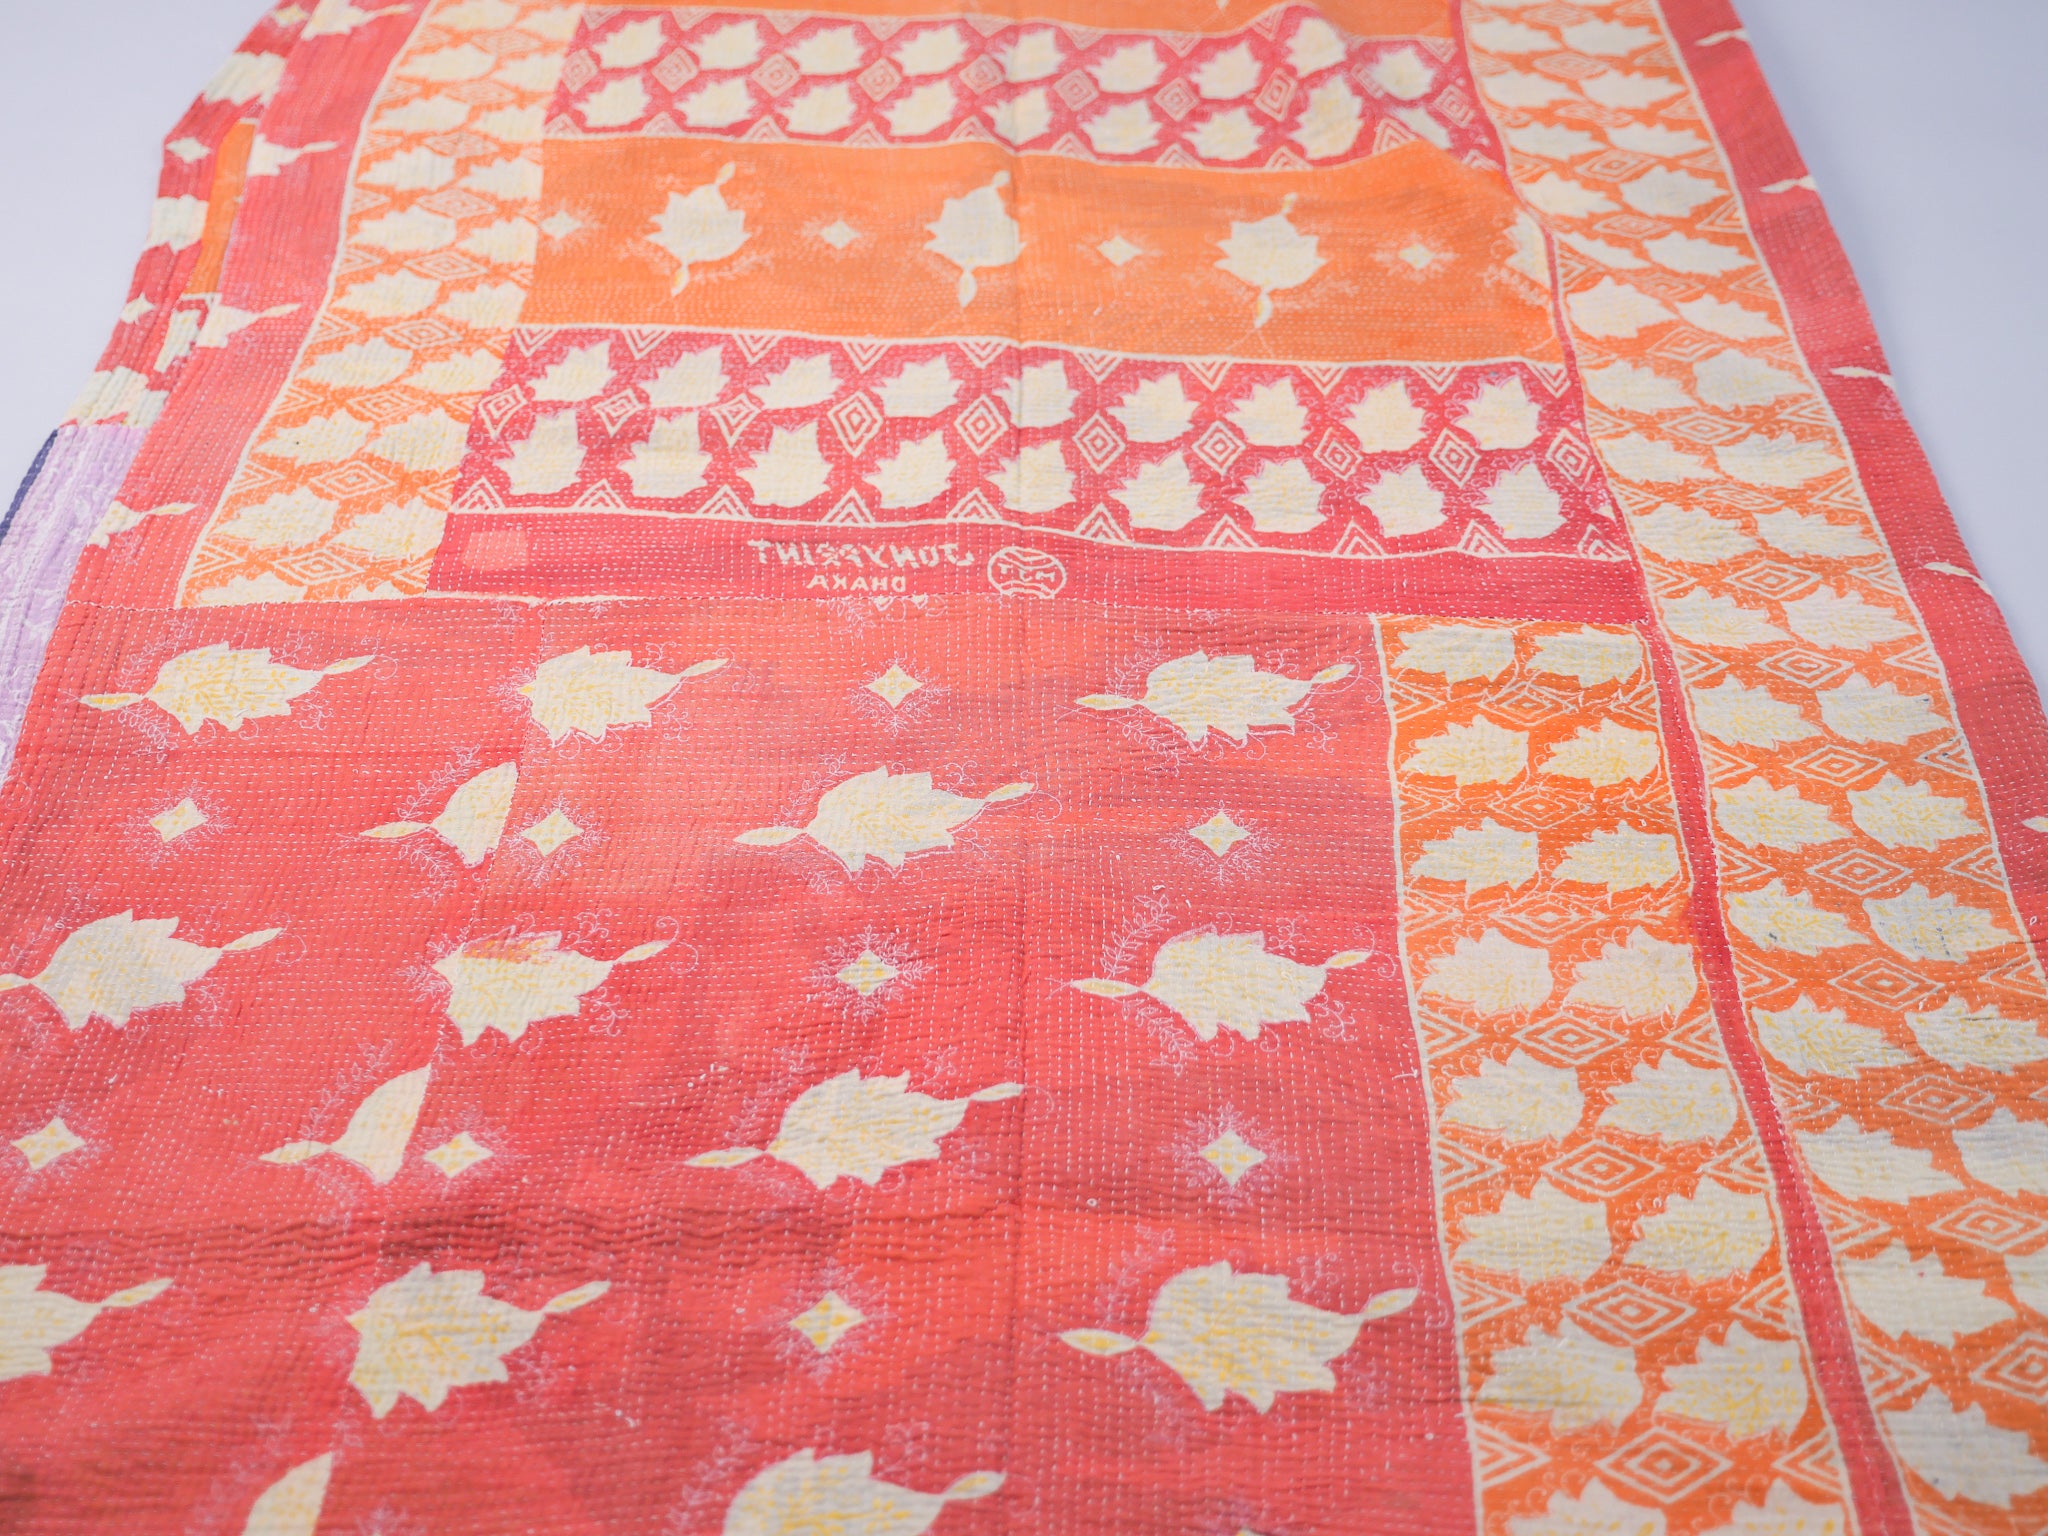 Couvre-lit kantha vintage.  Artisanat millénaire de récupération de textiles usés Le mot Kantha vient du sanscrit "Kontha" qui signifie "chiffons". Les paysannes du West Bengale assemblent plusieurs couches de vêtements usés, le plus souvent des Saris, qu'elles brodent au point pour en faire des couvertures ou des couvres-lit. 